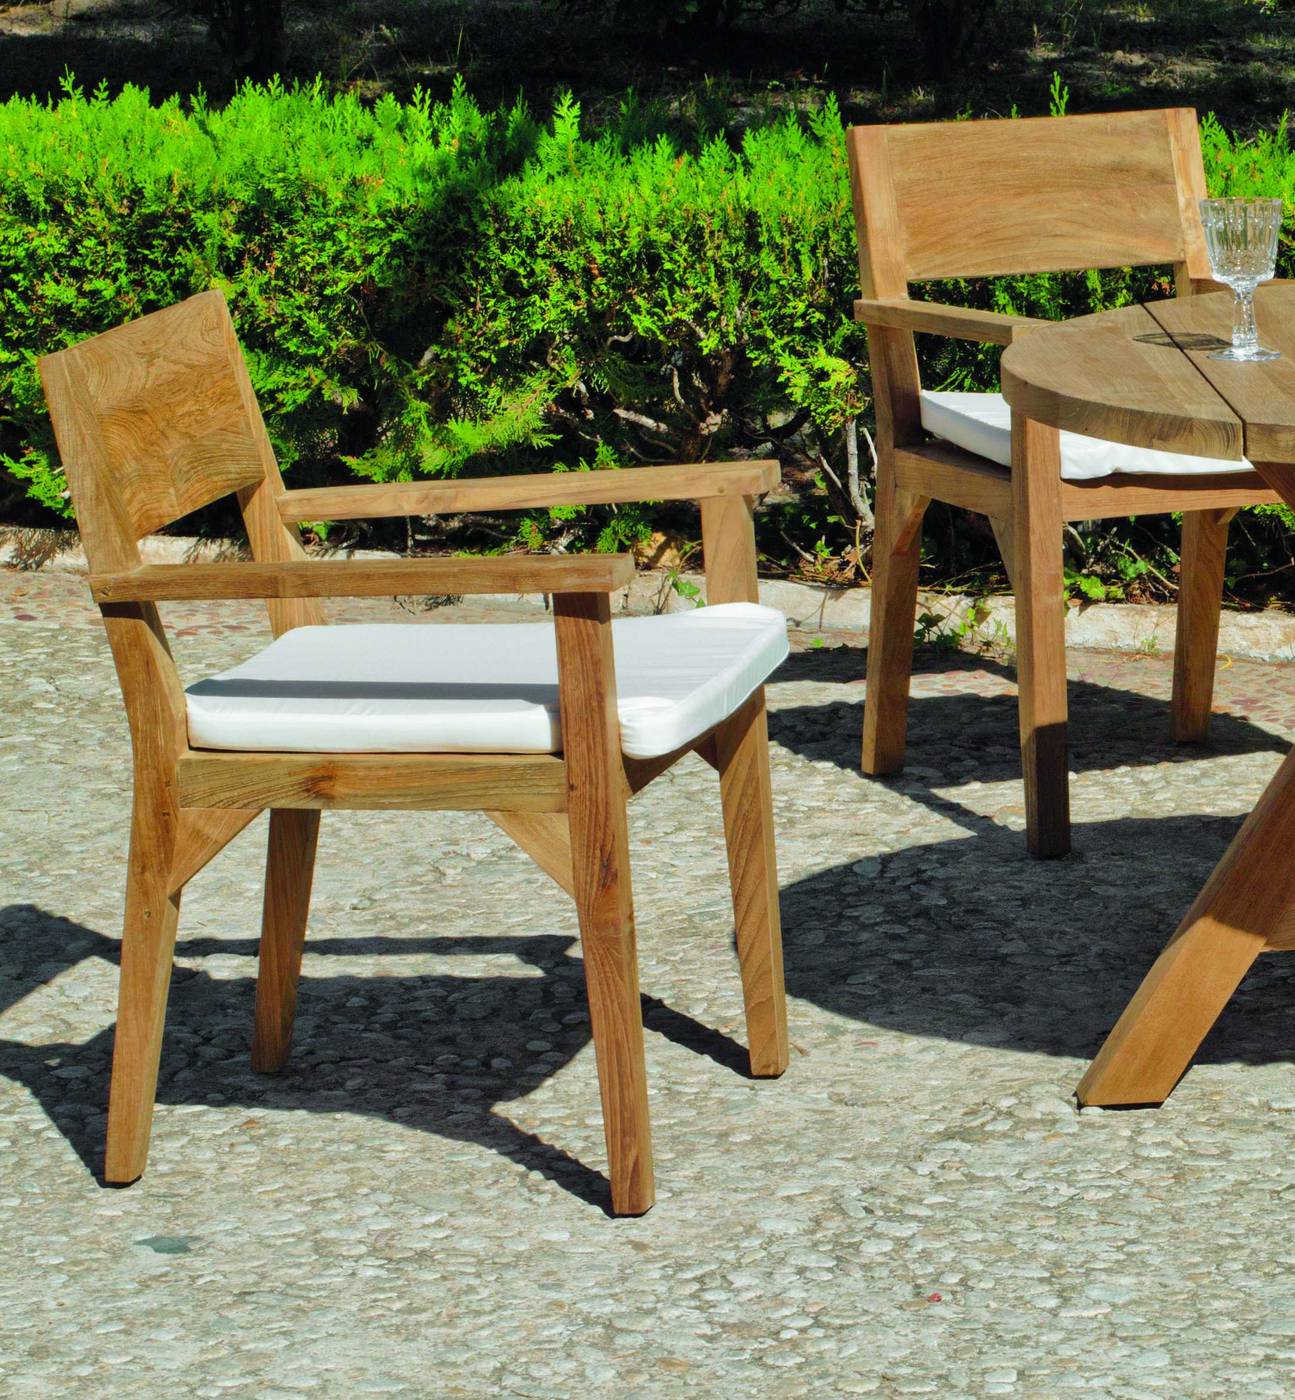 Conjunto Madera Teka Windsor-130/4 - Conjunto para jardín de madera de teka lux: Mesa redonda 130 cm. y 4 sillones con cojines